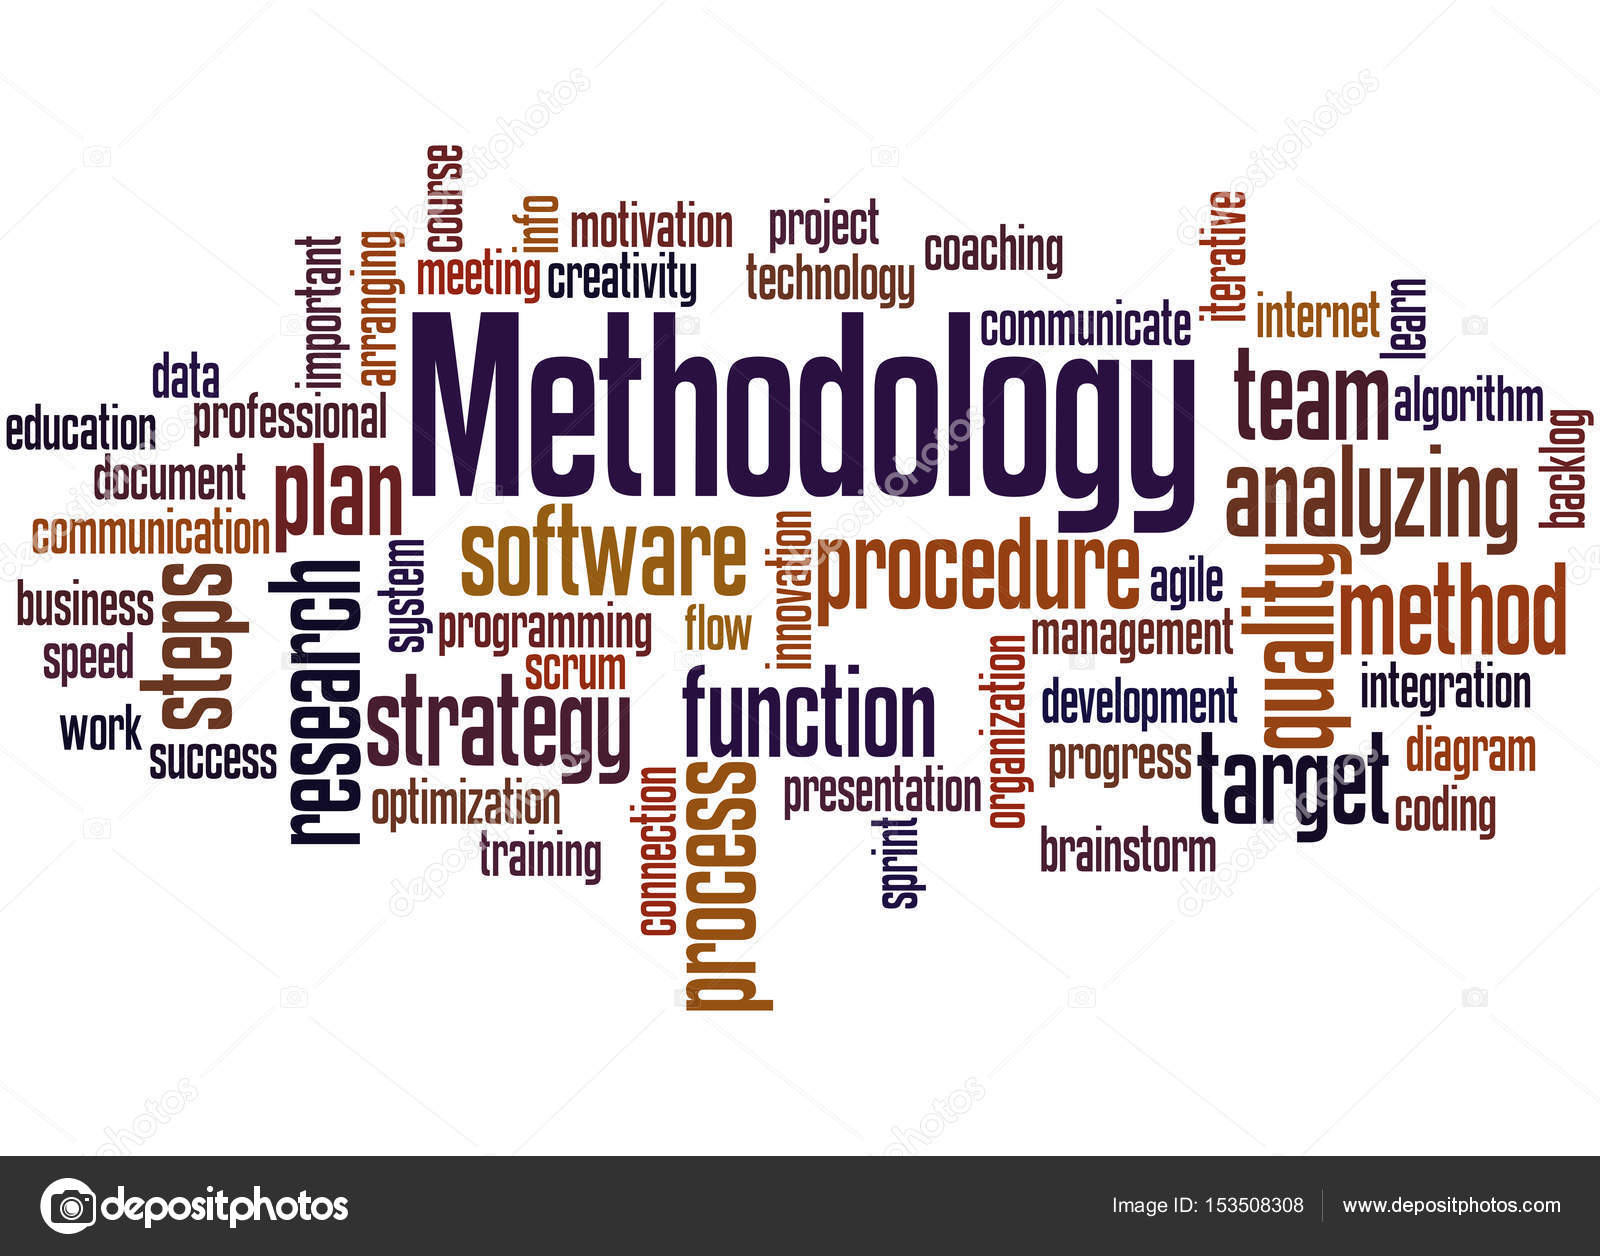 Methodology word